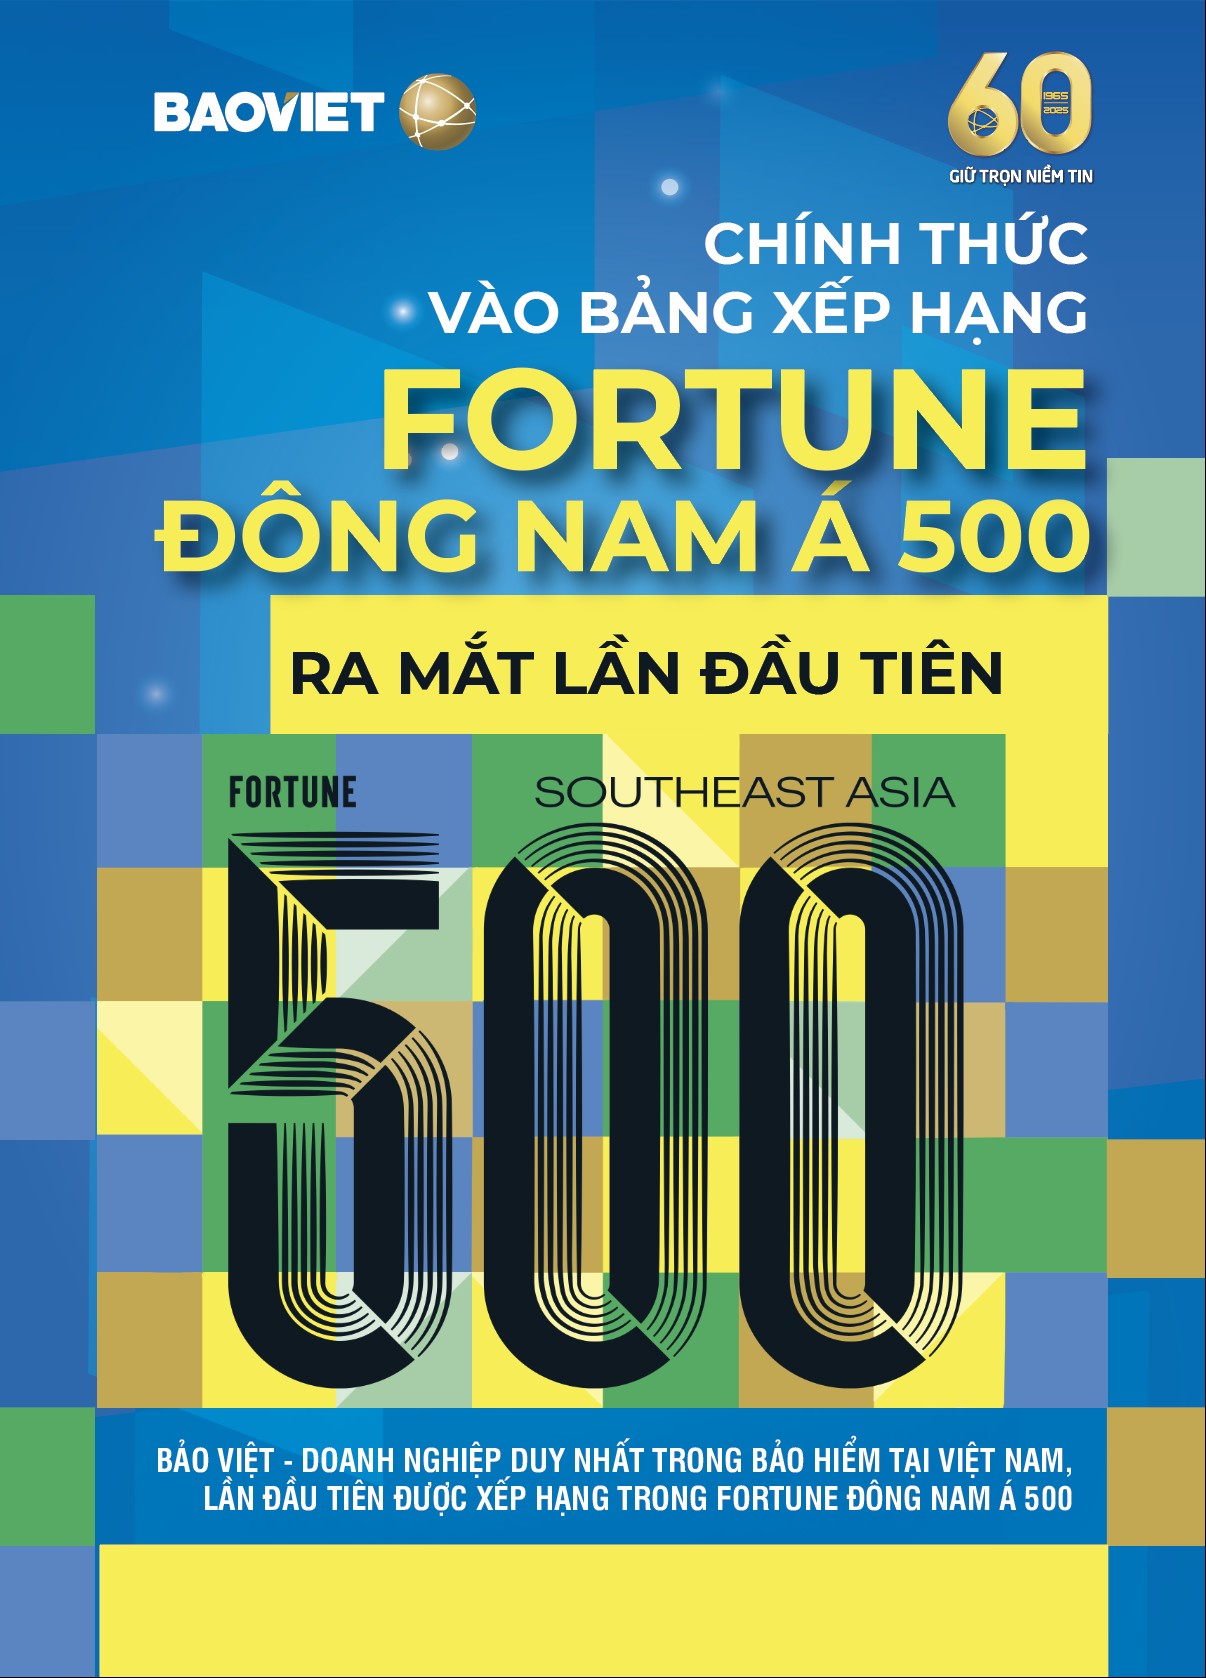 Bảo Việt vươn tầm khu vực, lần đầu tiên được xếp hạng trong Fortune Đông Nam Á 500